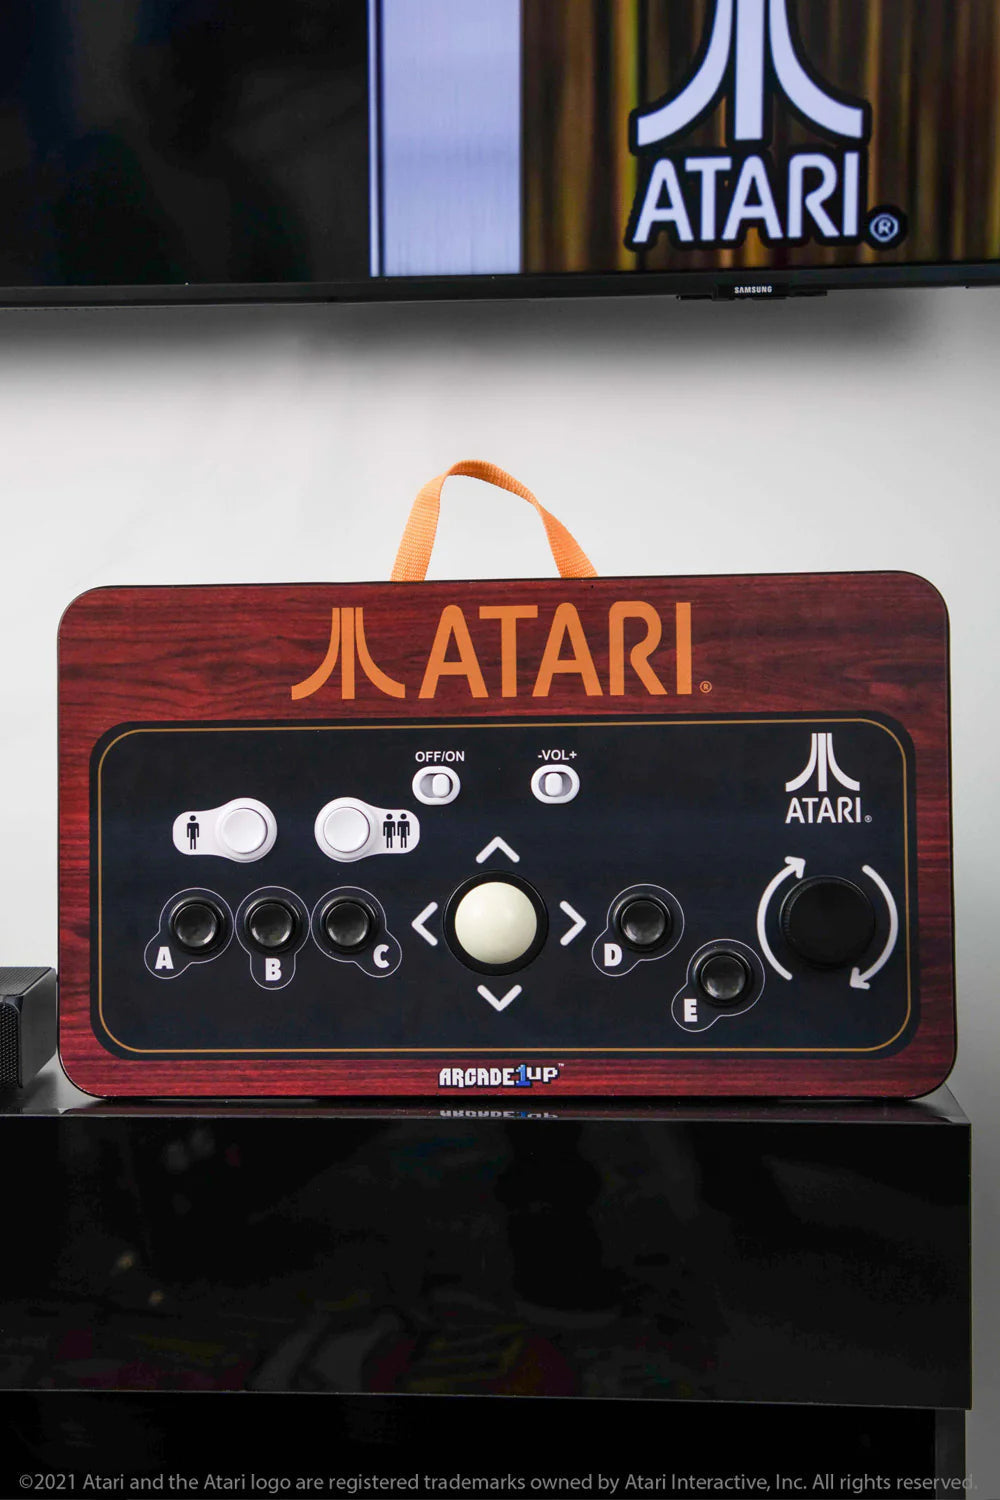 ARCADE 1 Up - Atari Couchcade - Cast Arkadspel Till Din TV!